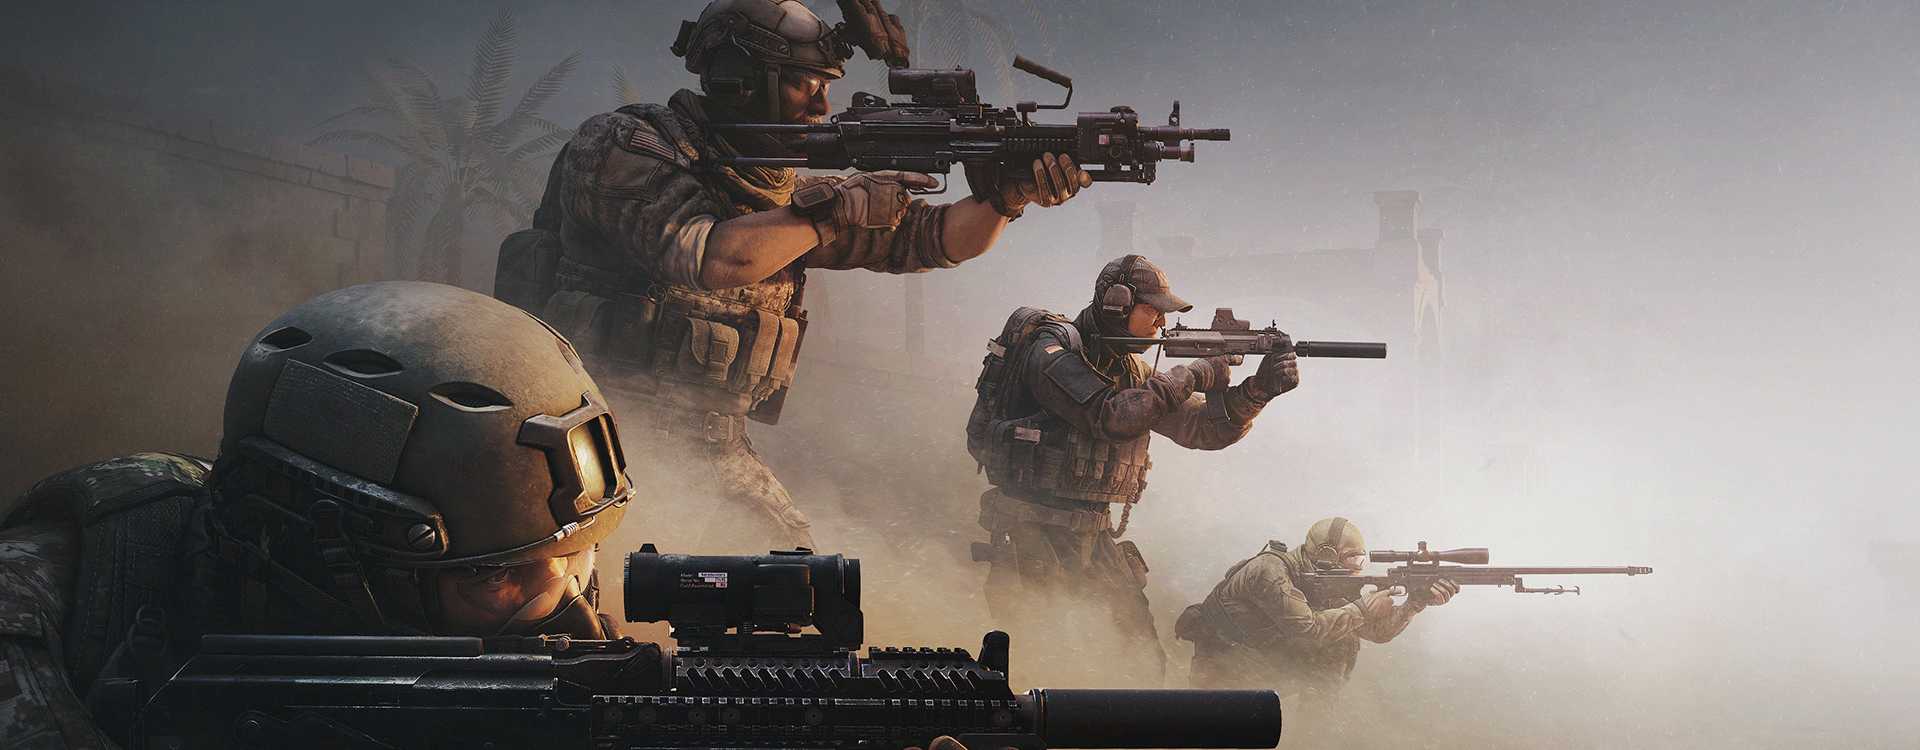 Der neue Shooter von Wargaming sieht aus wie Call of Duty trifft Rainbow Six